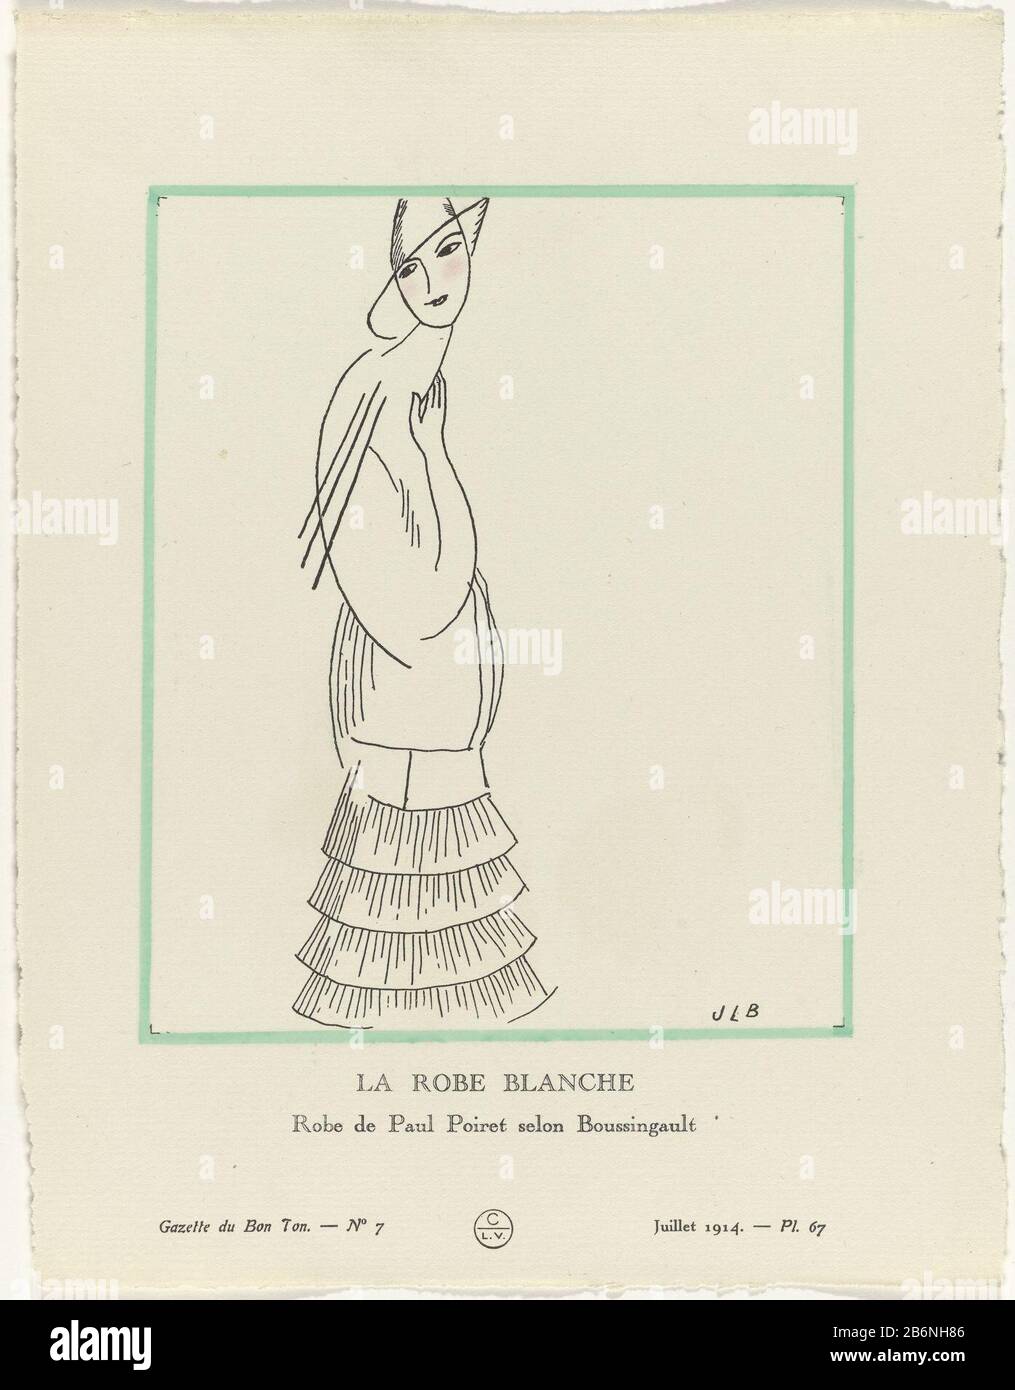 Gazette du Bon Ton, 1914 - No 7, Pl 67 La robe blanche Robe de Paul Poiret  selon Boussingault (titel op object) Standing woman wearing a white dress  by Paul Poiret. The